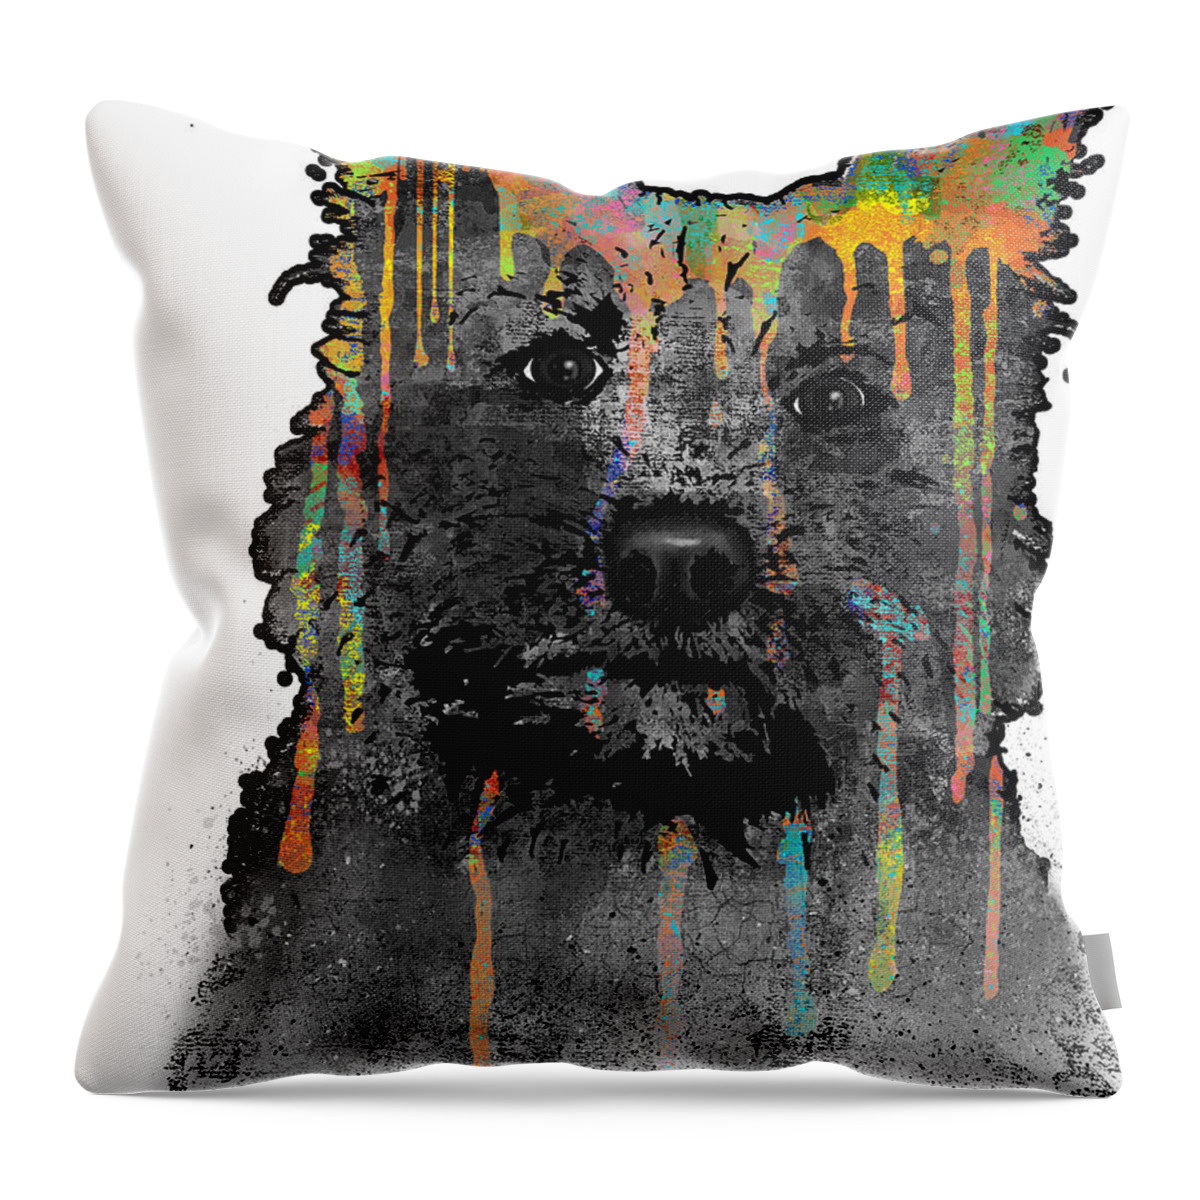 Cairn Terrier Throw Pillow featuring the digital art Cairn Terrier by Marlene Watson